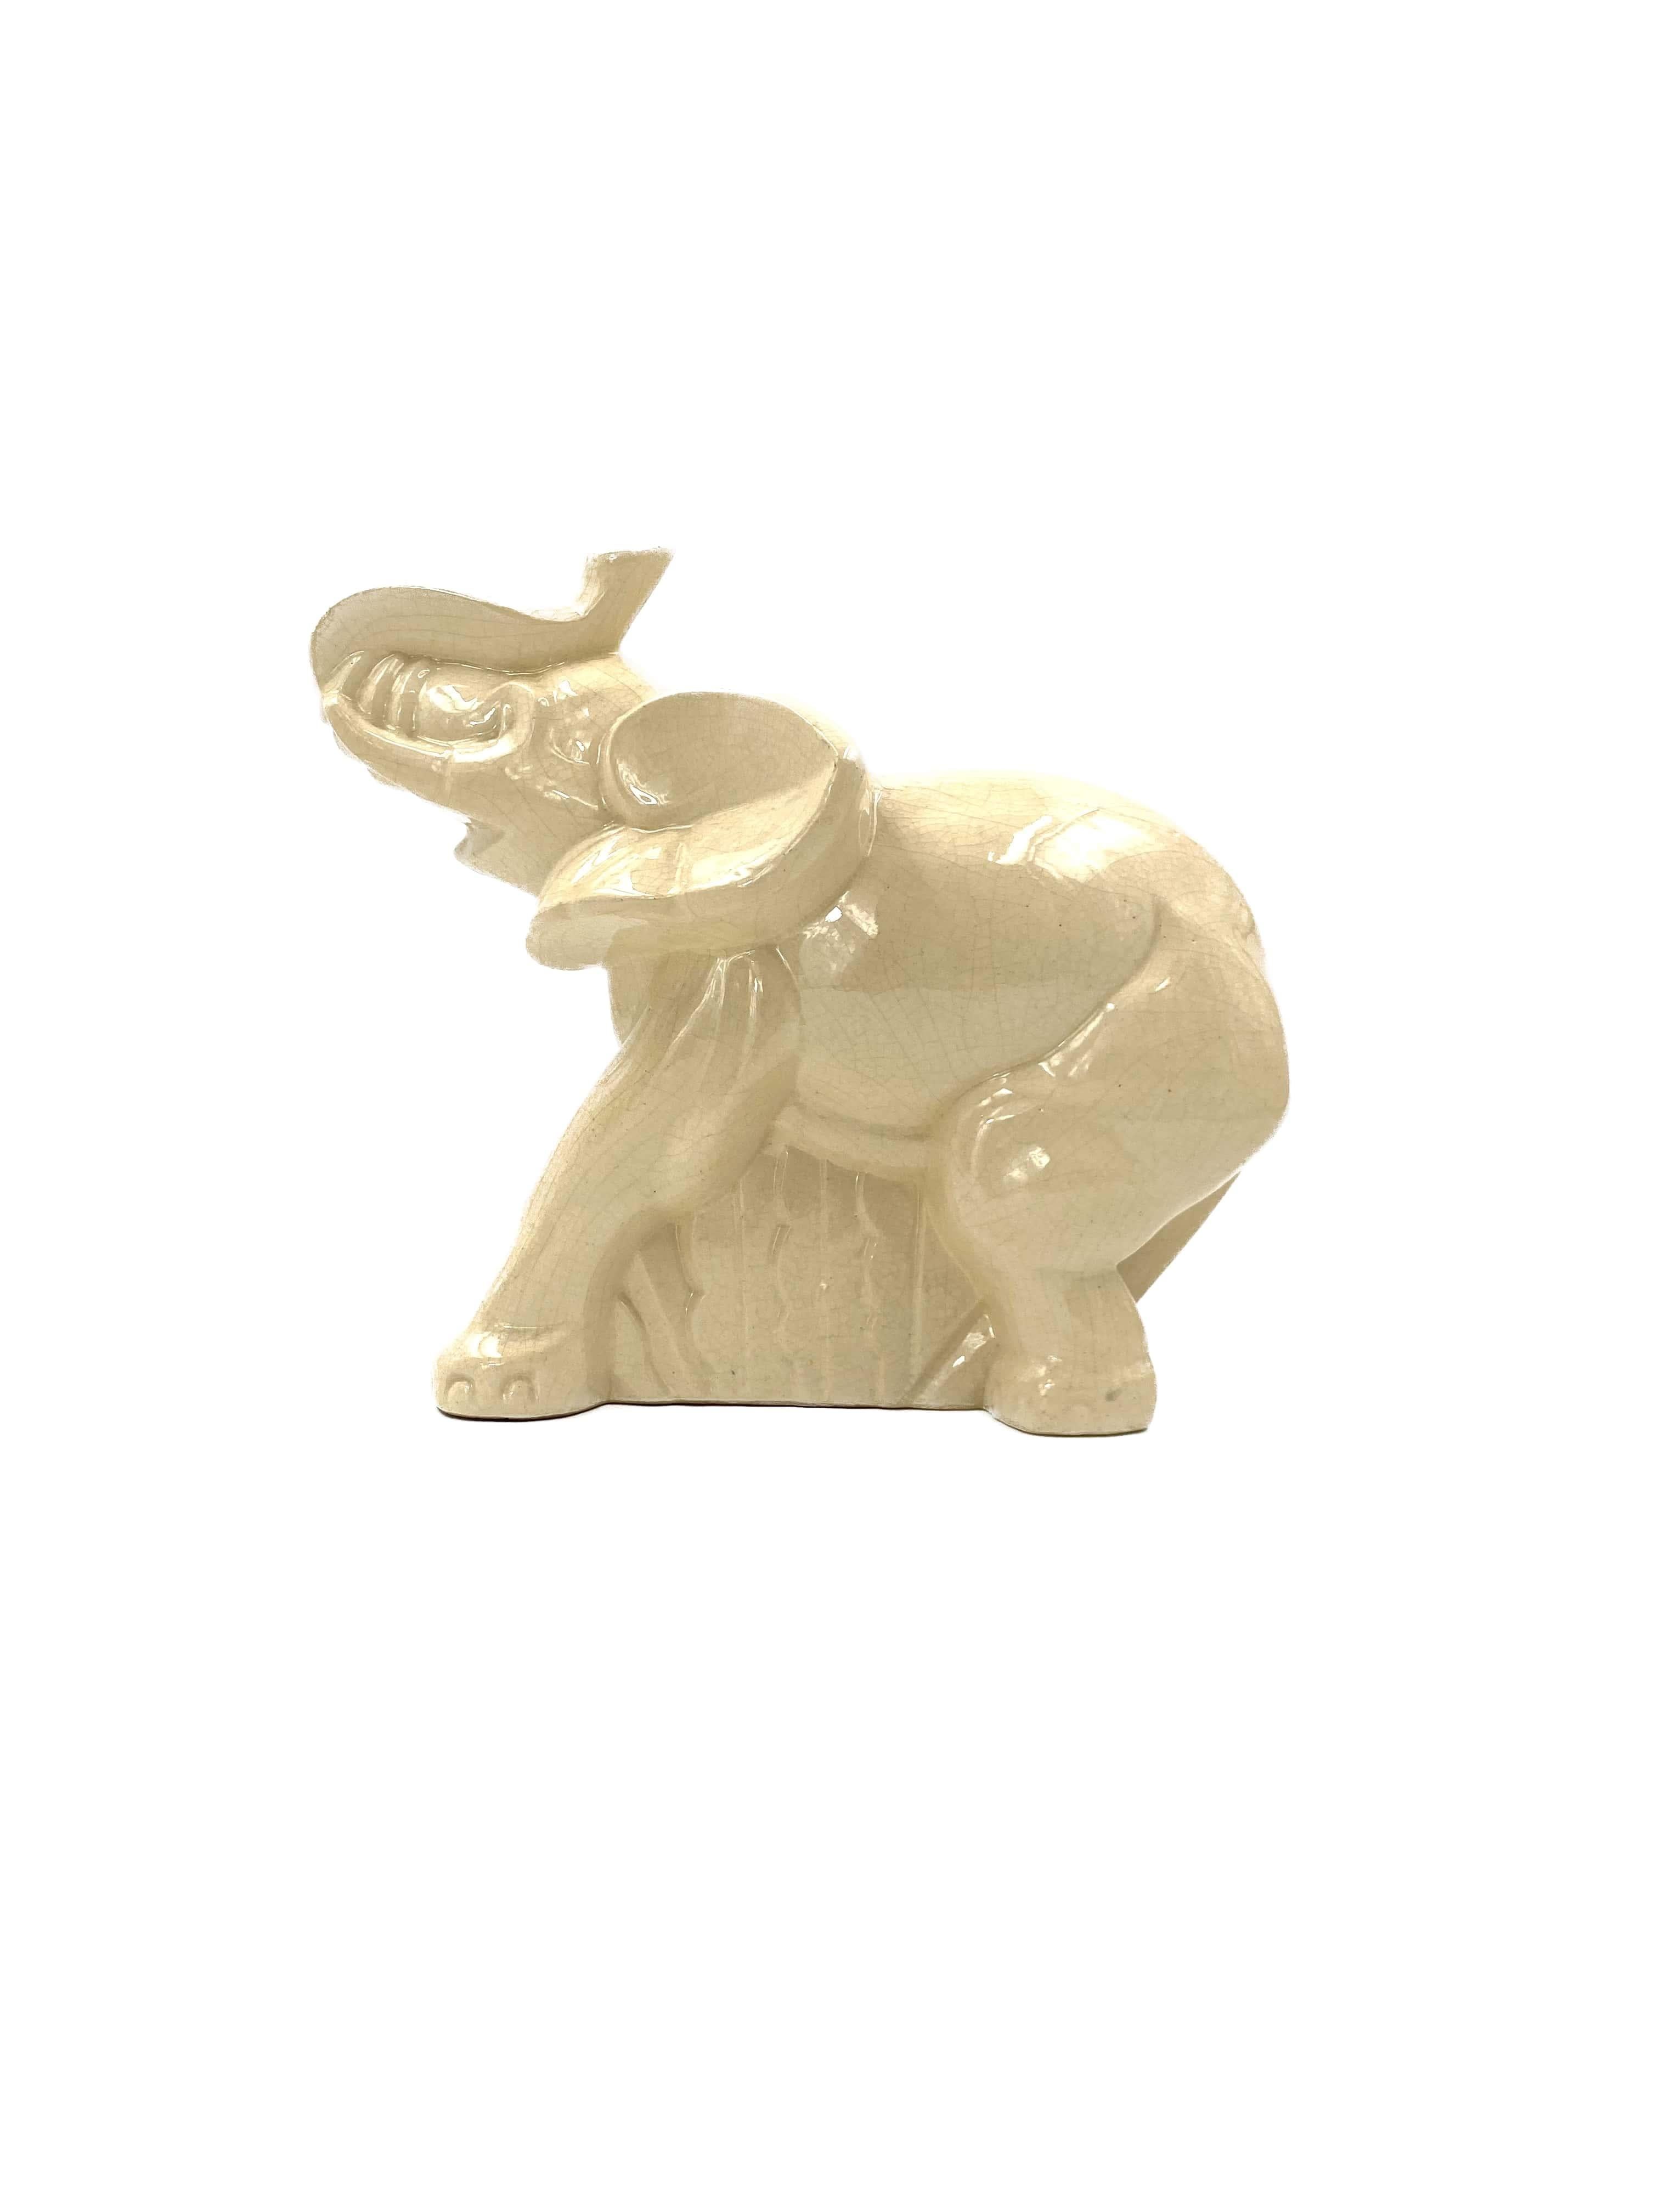 ivory elephant figurine